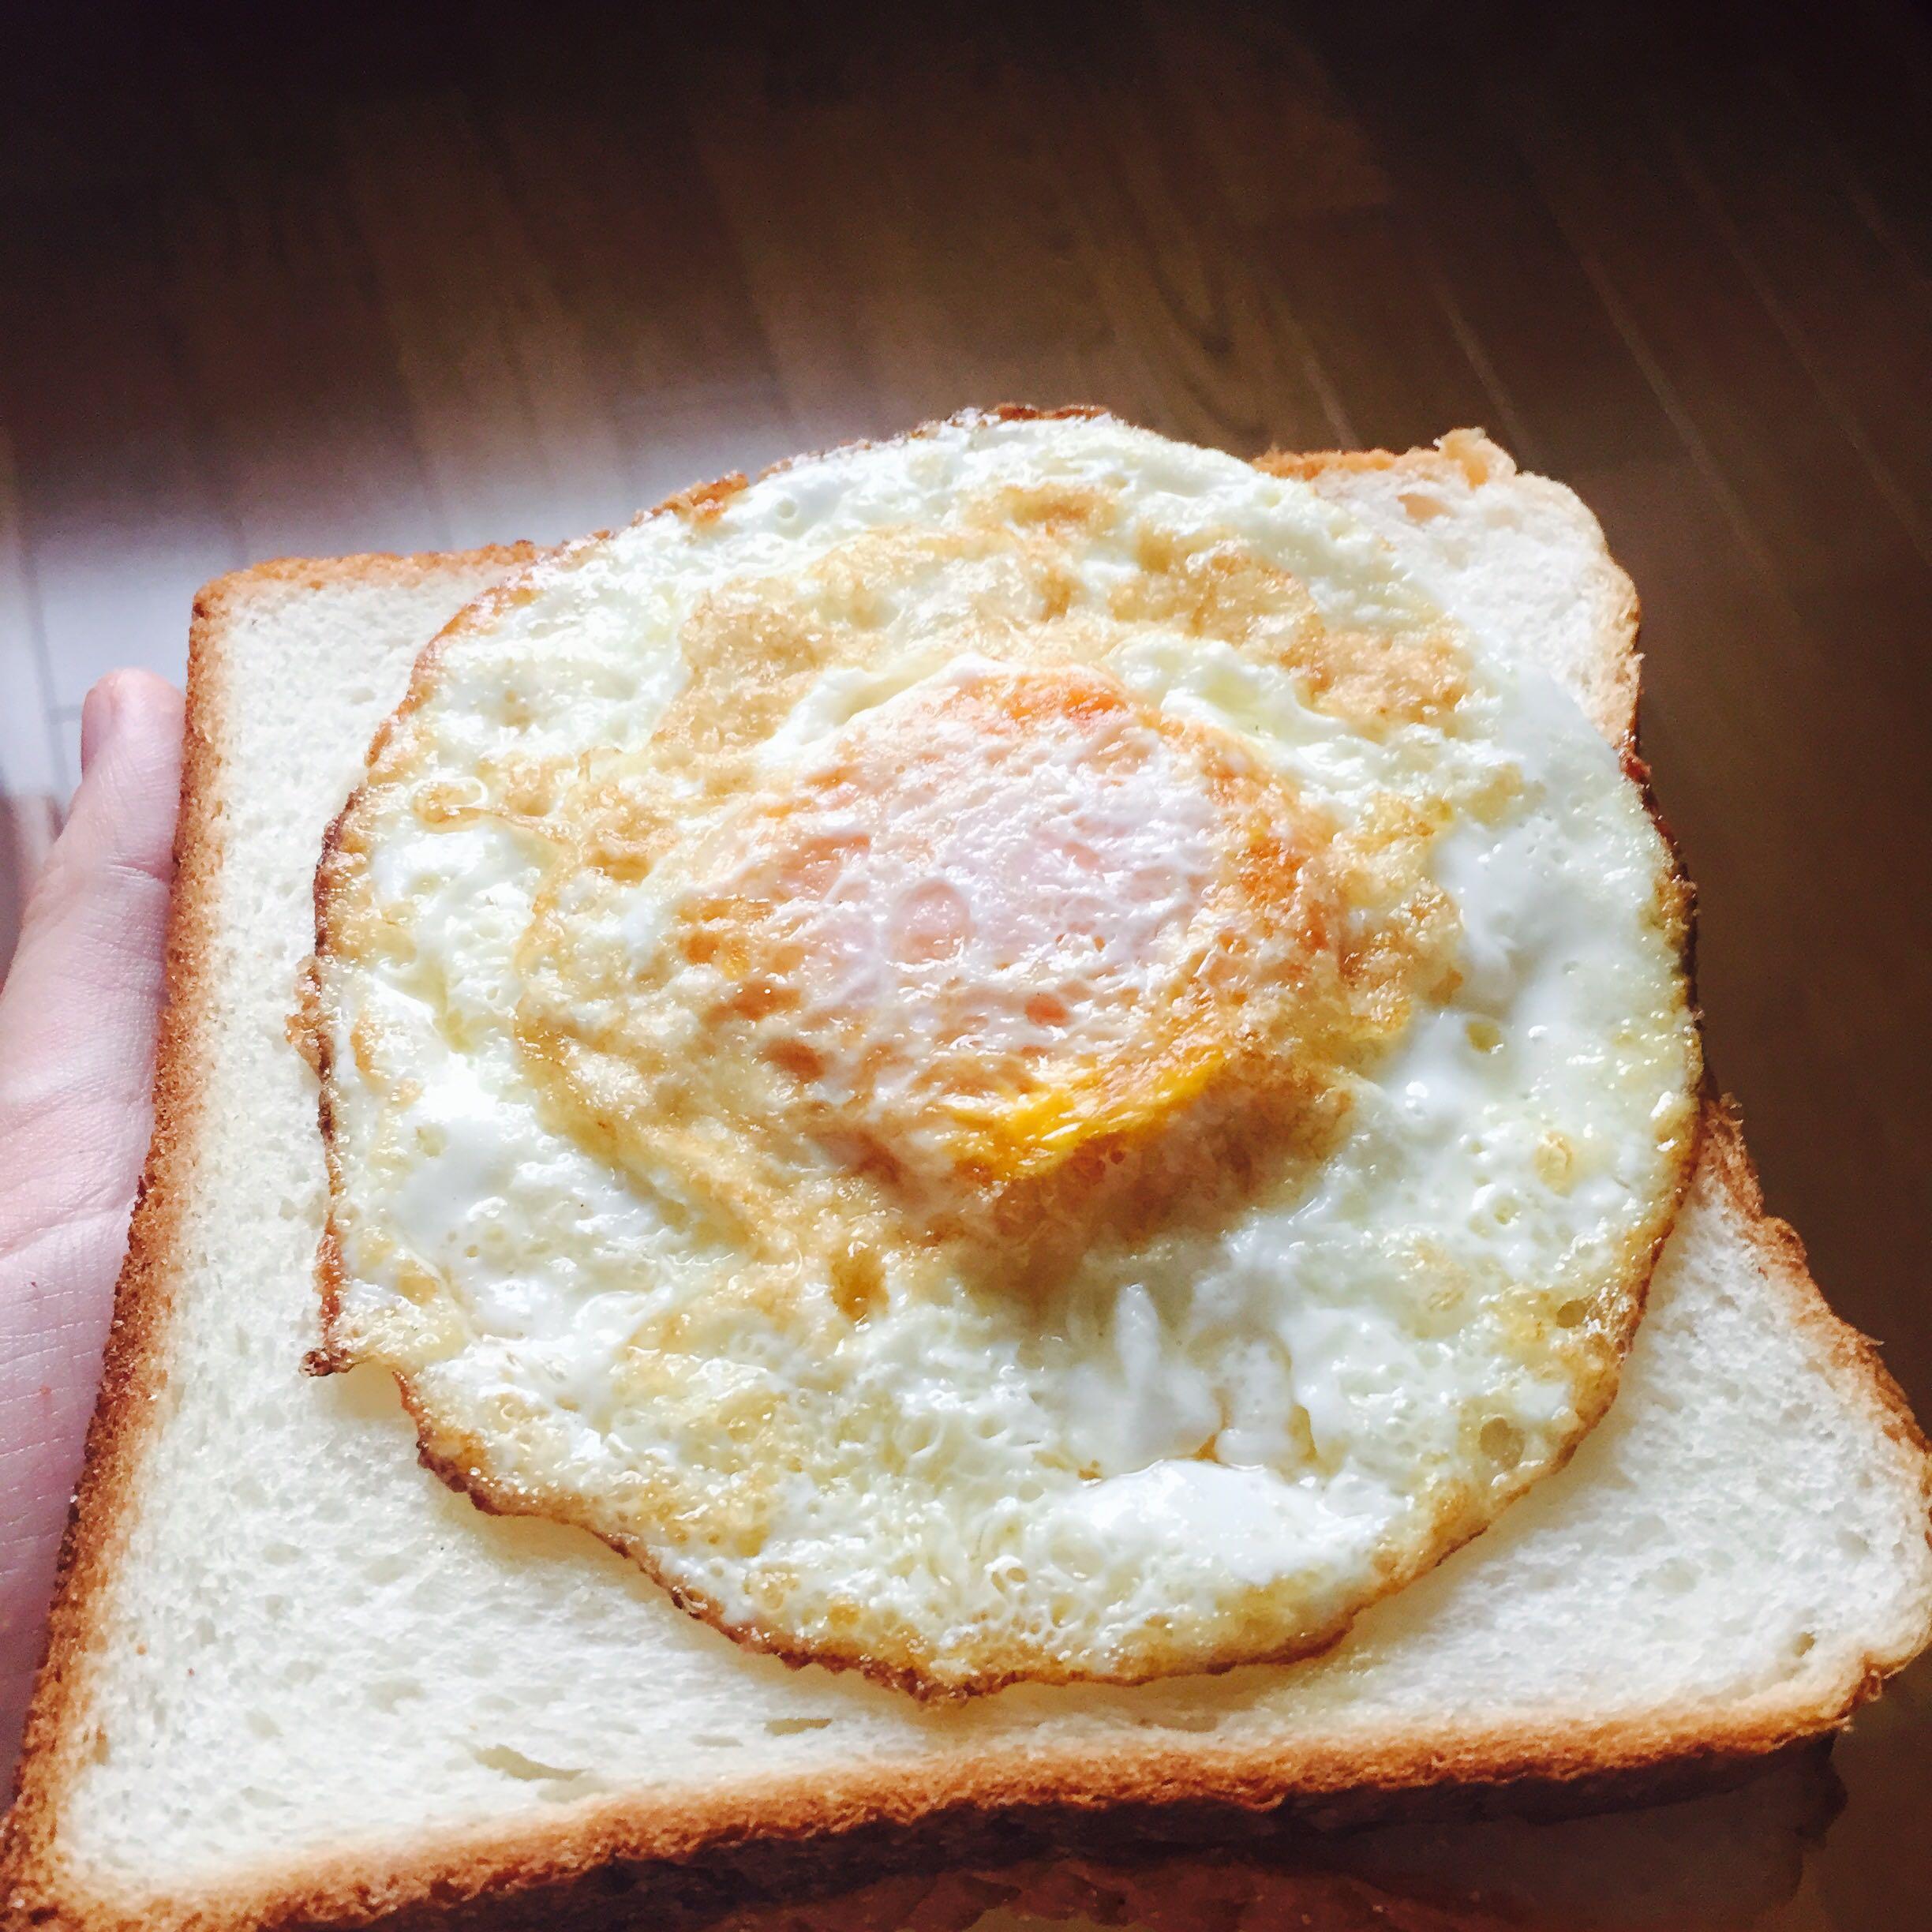 怎样煎出蛋白不糊纯白色,溏心的煎蛋? 